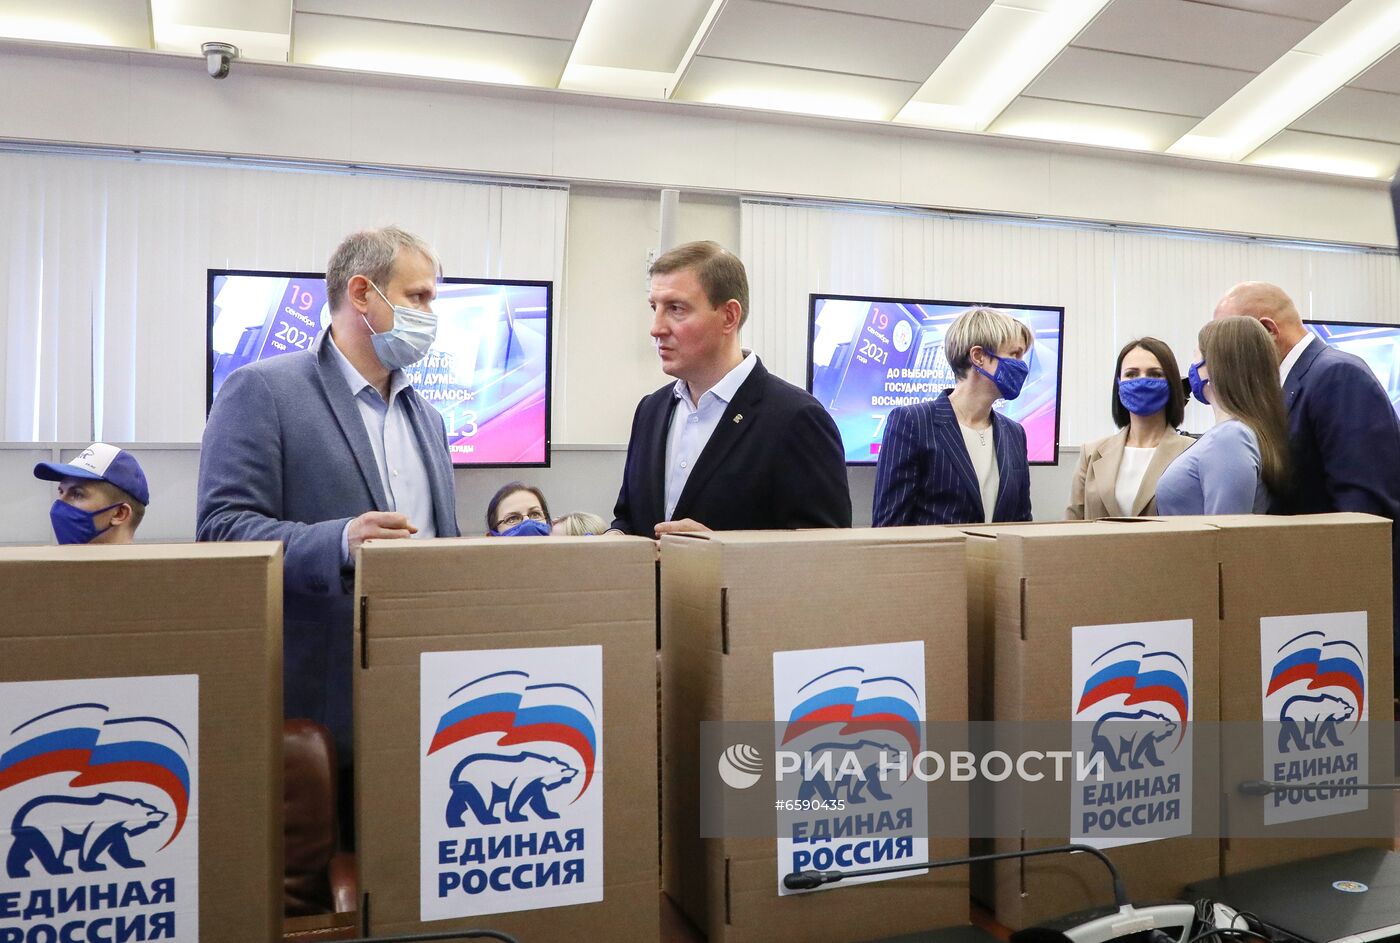 Подача документов партией "Единая Россия" для регистрации кандидатов в депутаты Госдумы